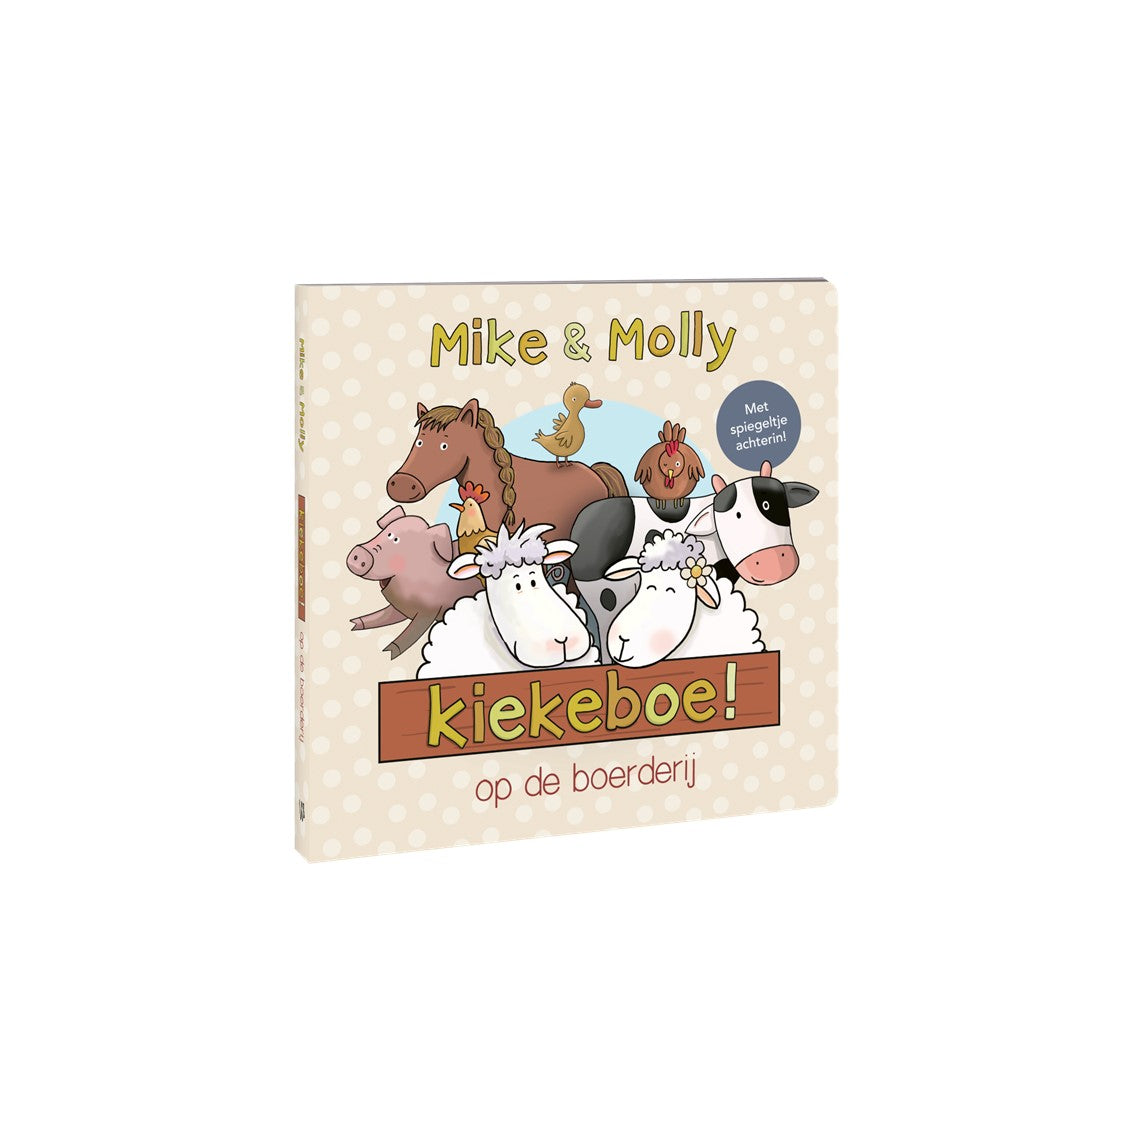 Mike & Molly - Kiekeboe op de boerderij